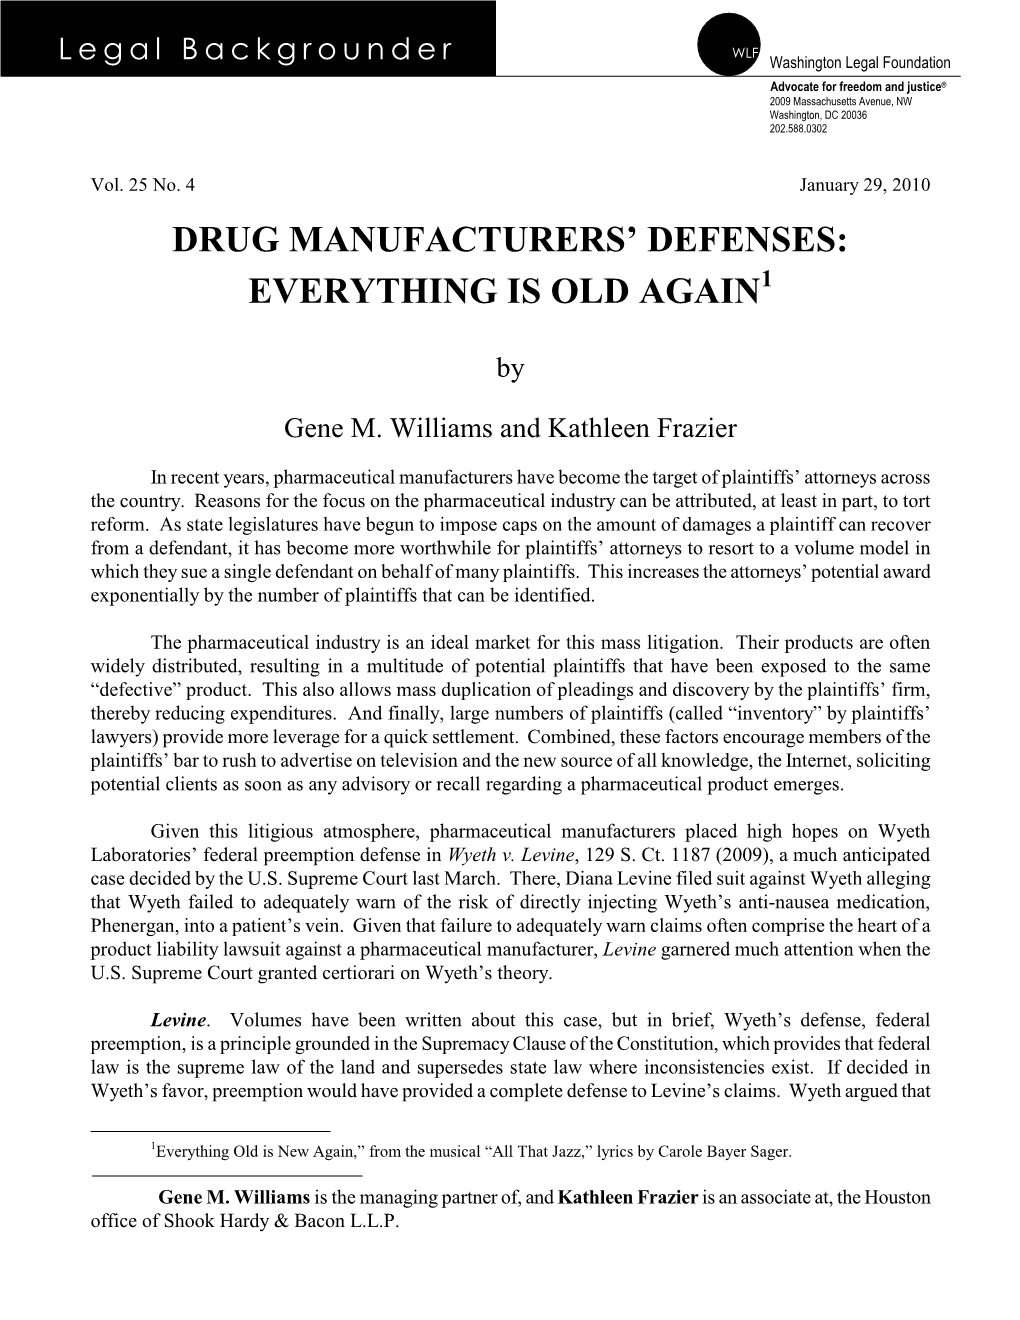 Drug Manufacturers' Defenses